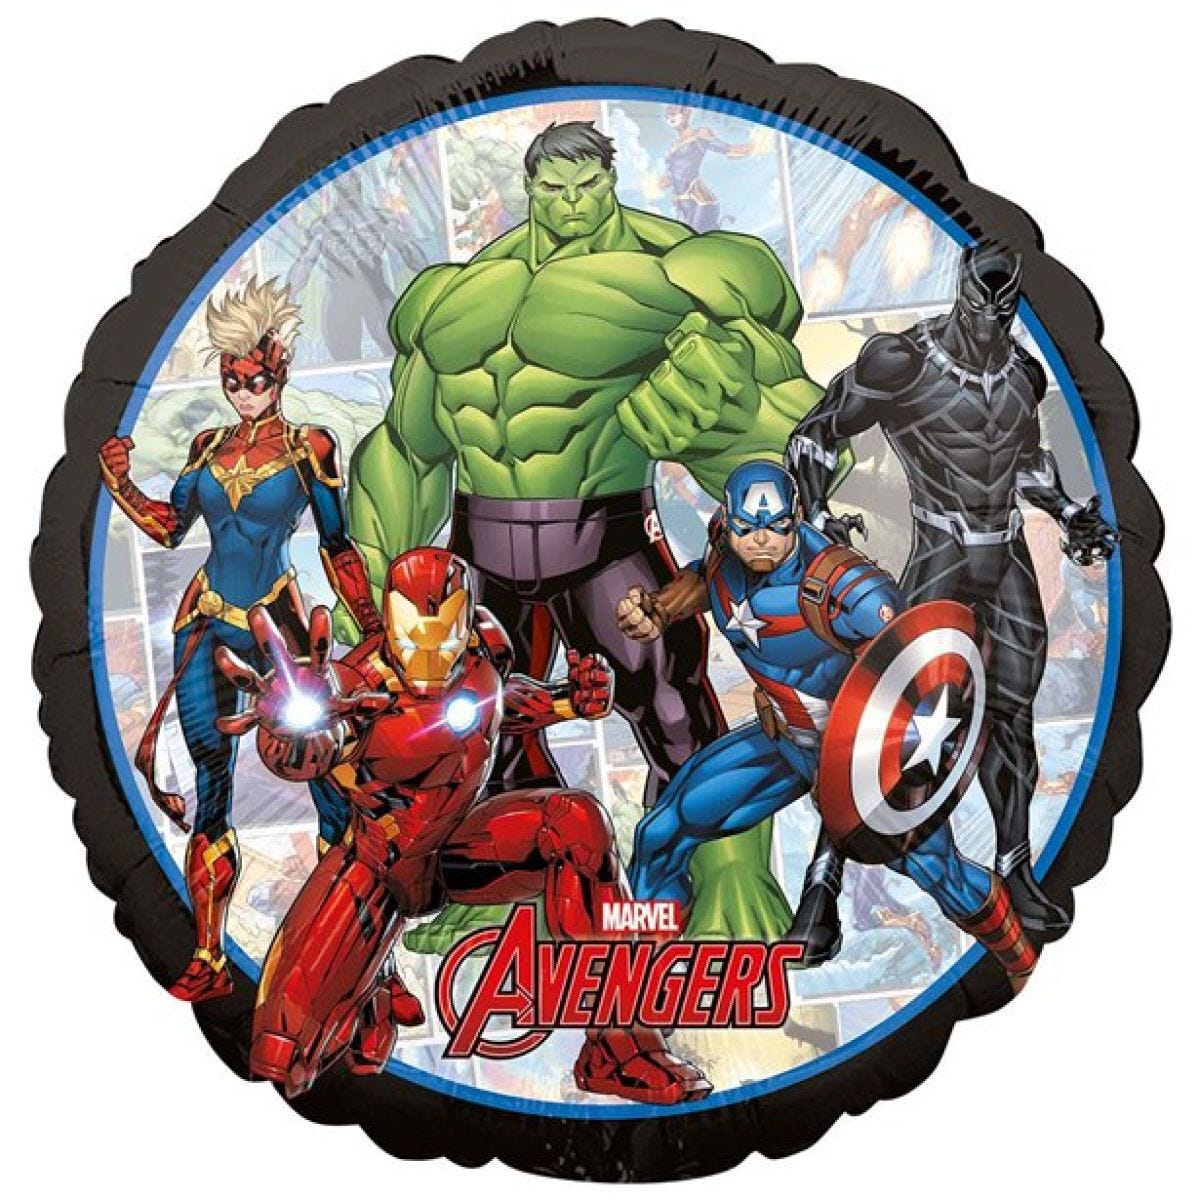 Avengers Marvel Powers Foil Balloon - 18"